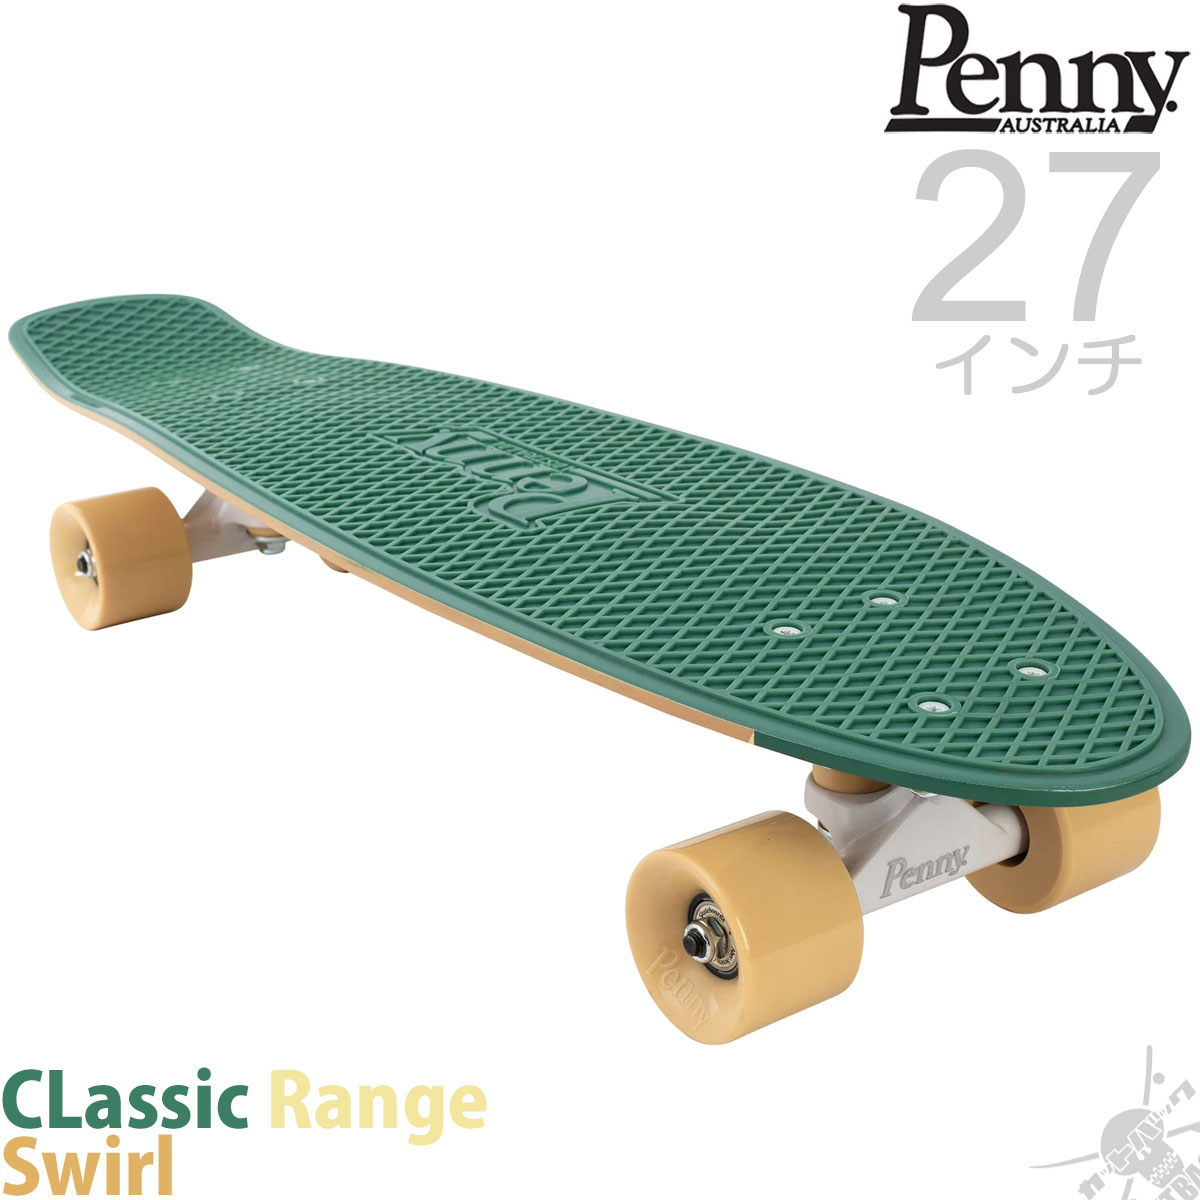 楽天市場 ペニースケートボード 27インチ スワール Penny Skateboard Classic Range Swirl スケートボード スケボー ペニー コンプリート セット 渦巻きデザイン 完成品 クルーザー プラスチック ブランド 国内正規品 スケートボード専門店カットバック